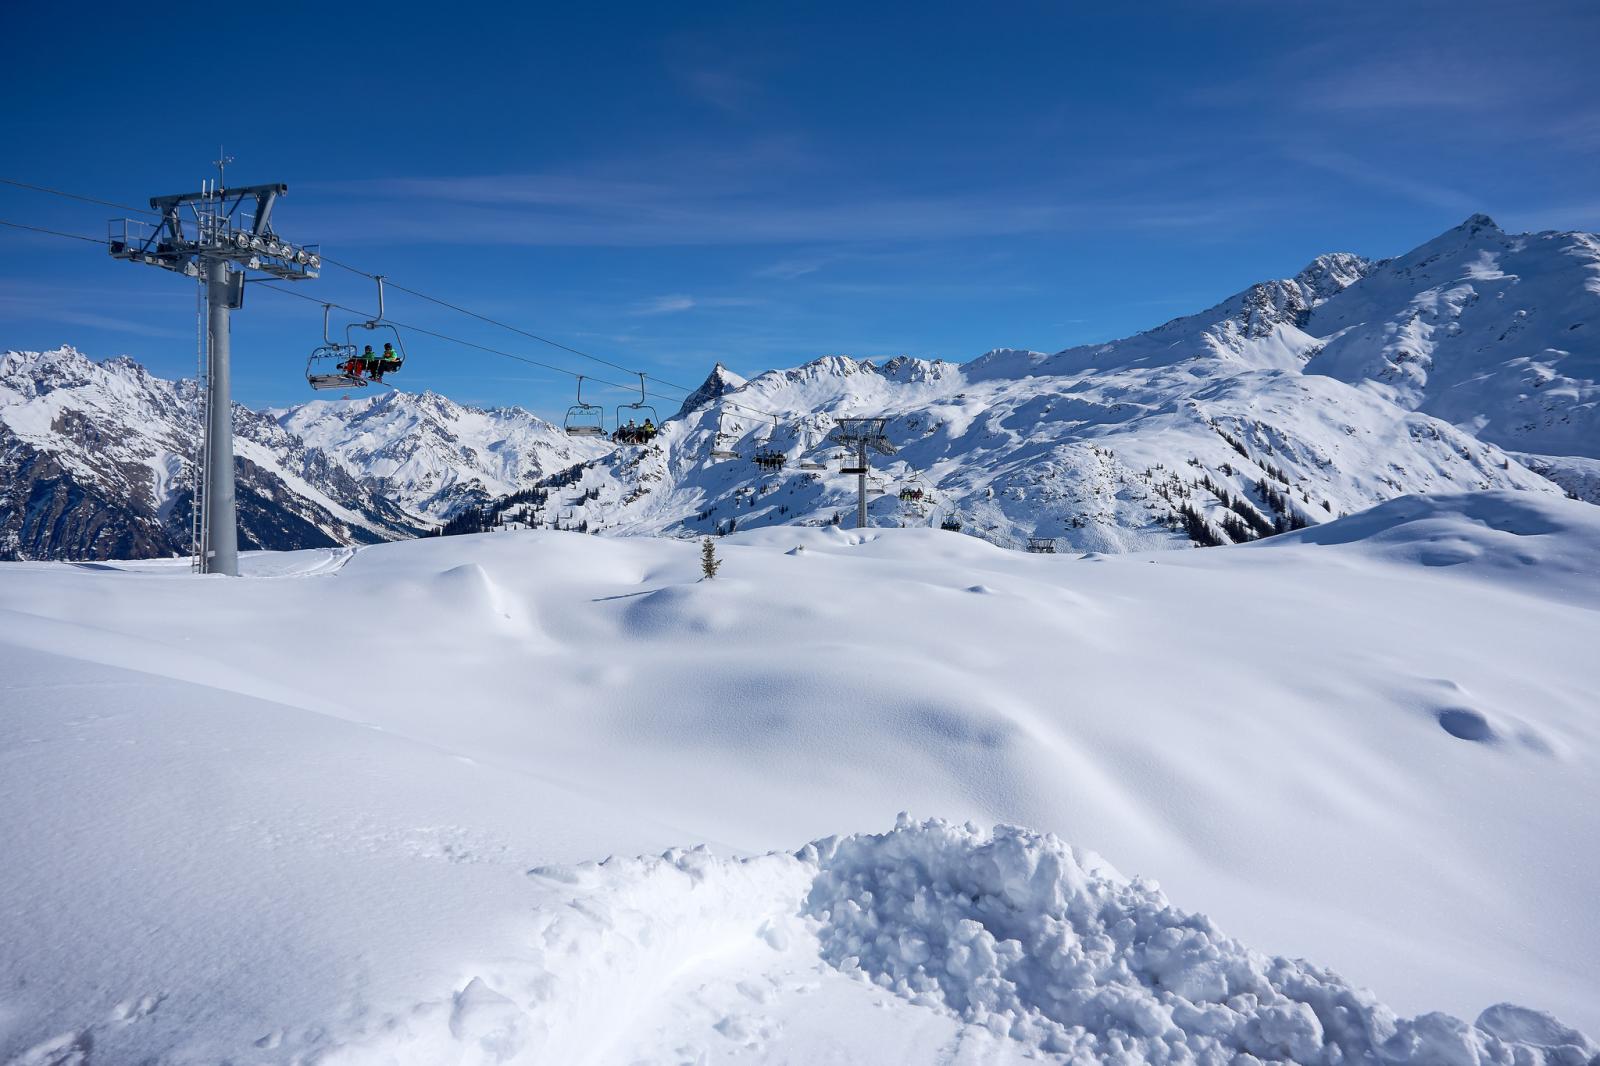 10x heel sneeuwzekere skigebieden in Europa